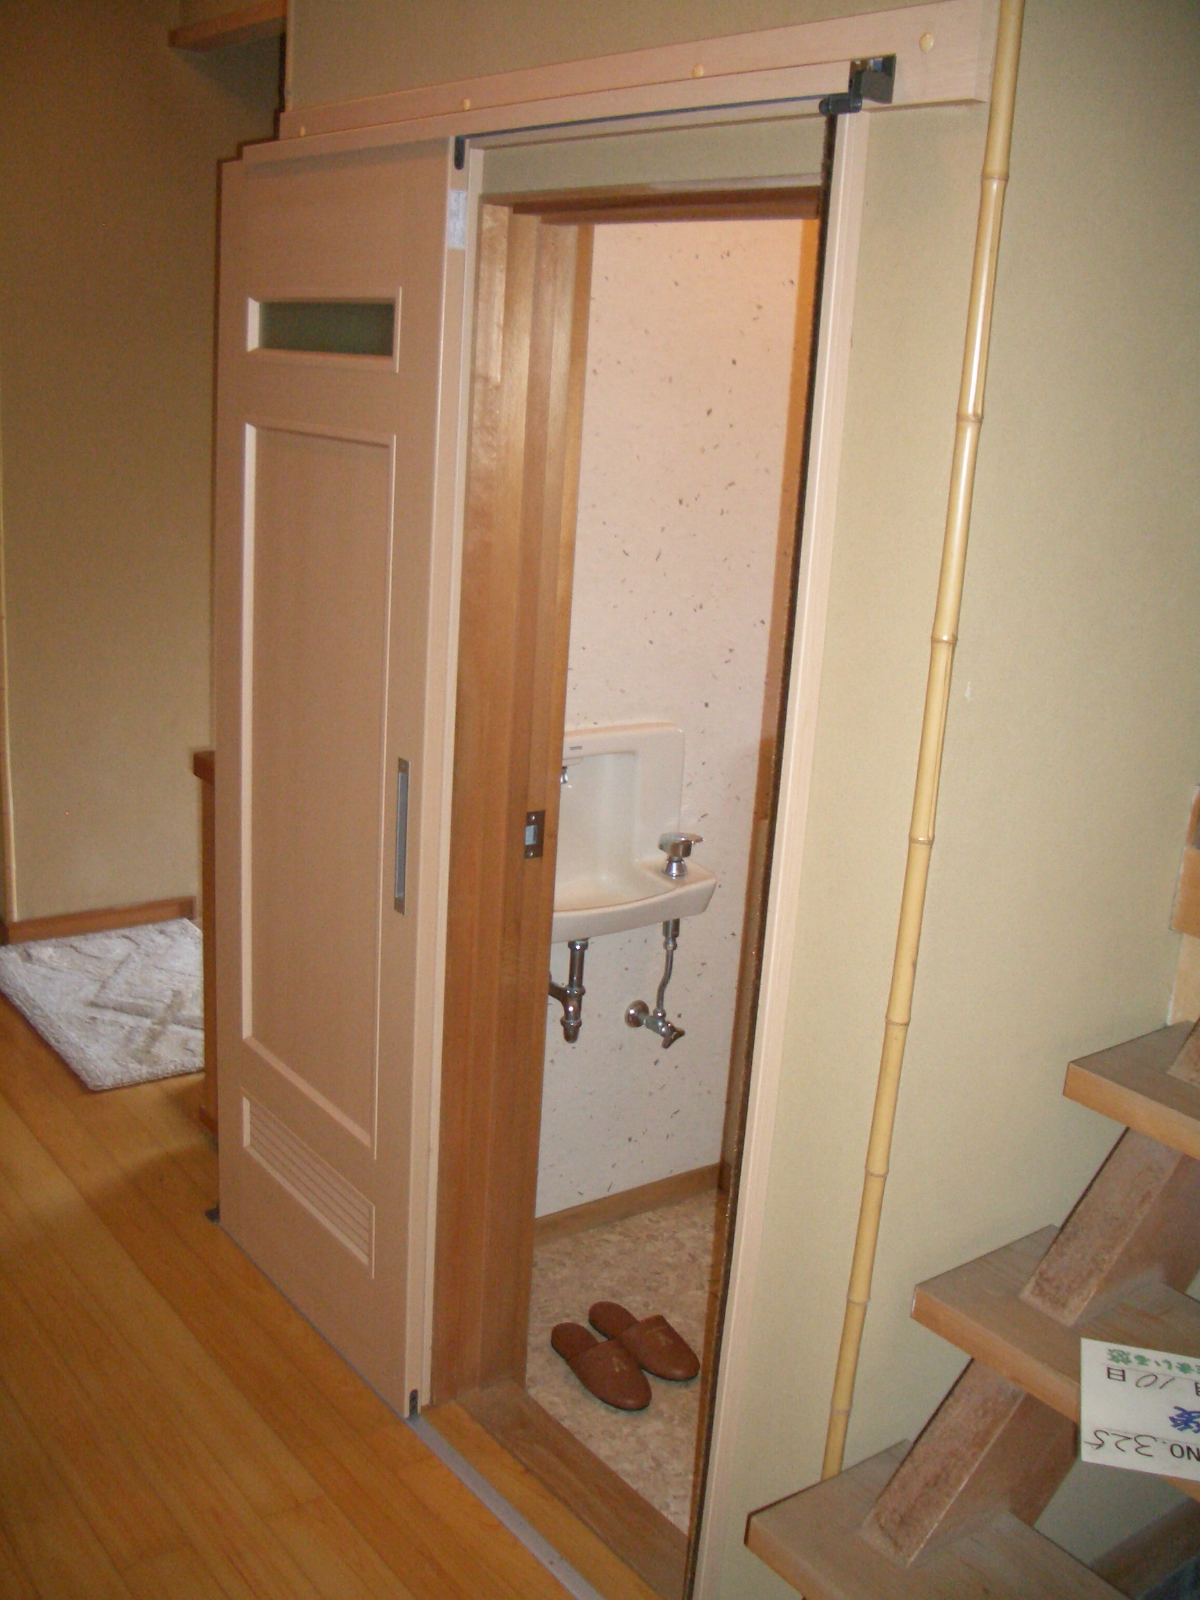 022 トイレドアの変更 (ｱｳﾄｾｯﾄ引戸) 床・扉などの変更 自立支援住宅改修工事 プランニング・施工